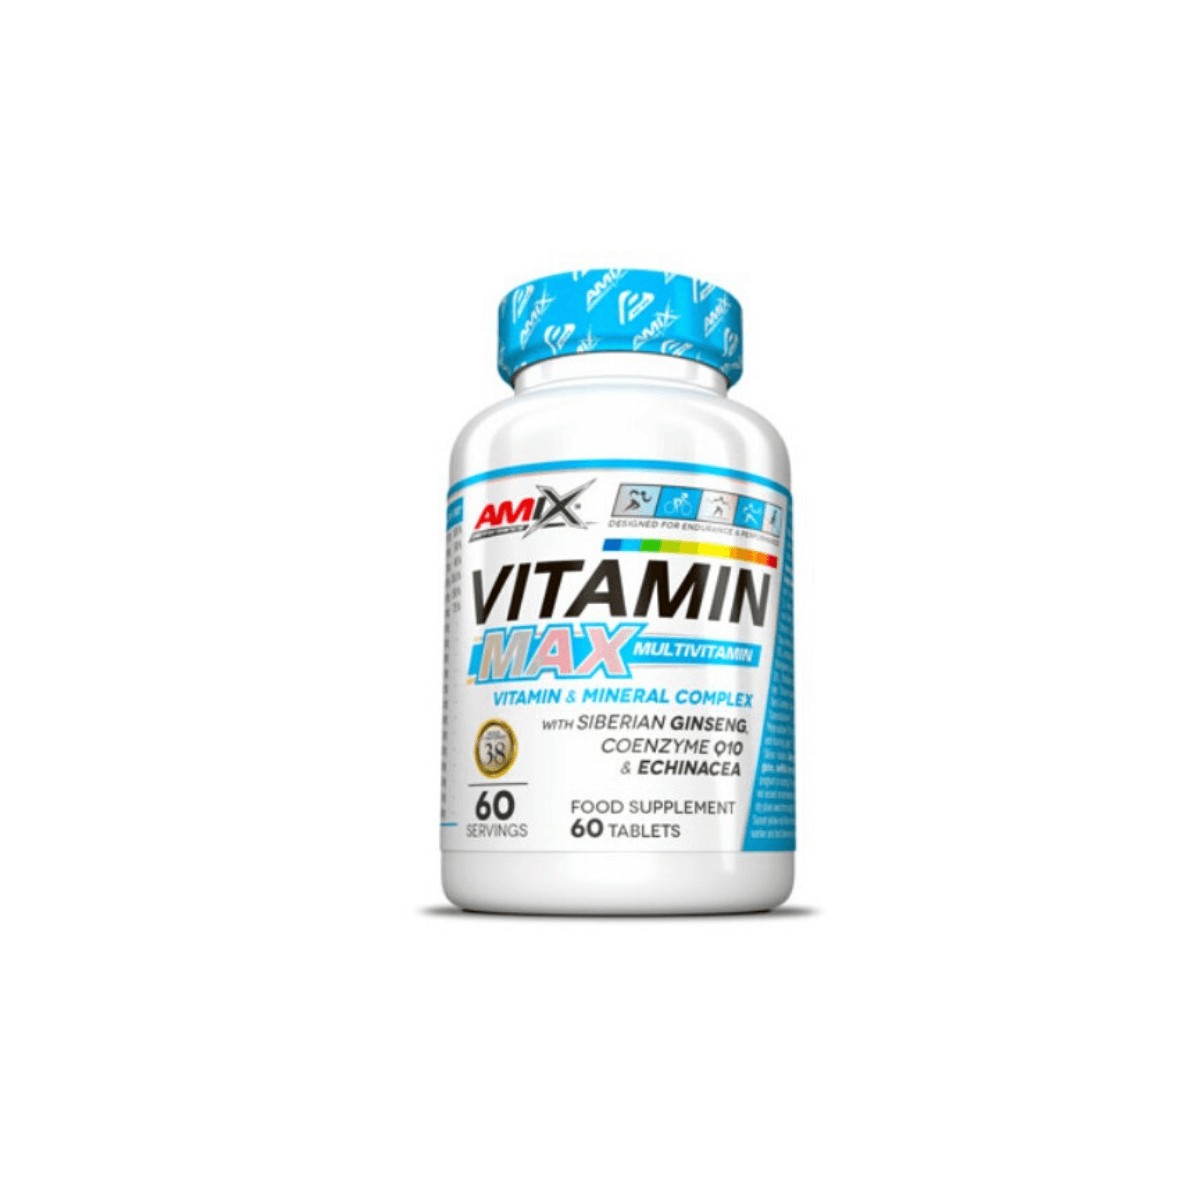 Performance günstig Kaufen-AMIX Performance Vitamin Max Multivitamin. AMIX Performance Vitamin Max Multivitamin <![CDATA[AMIX Performance Vitamin Max Multivitamin Vitamin Max Multivitamin ist ein Vitaminkomplex für Ausdauersportler. Mit den wichtigsten Mikronährstoffen formuliert